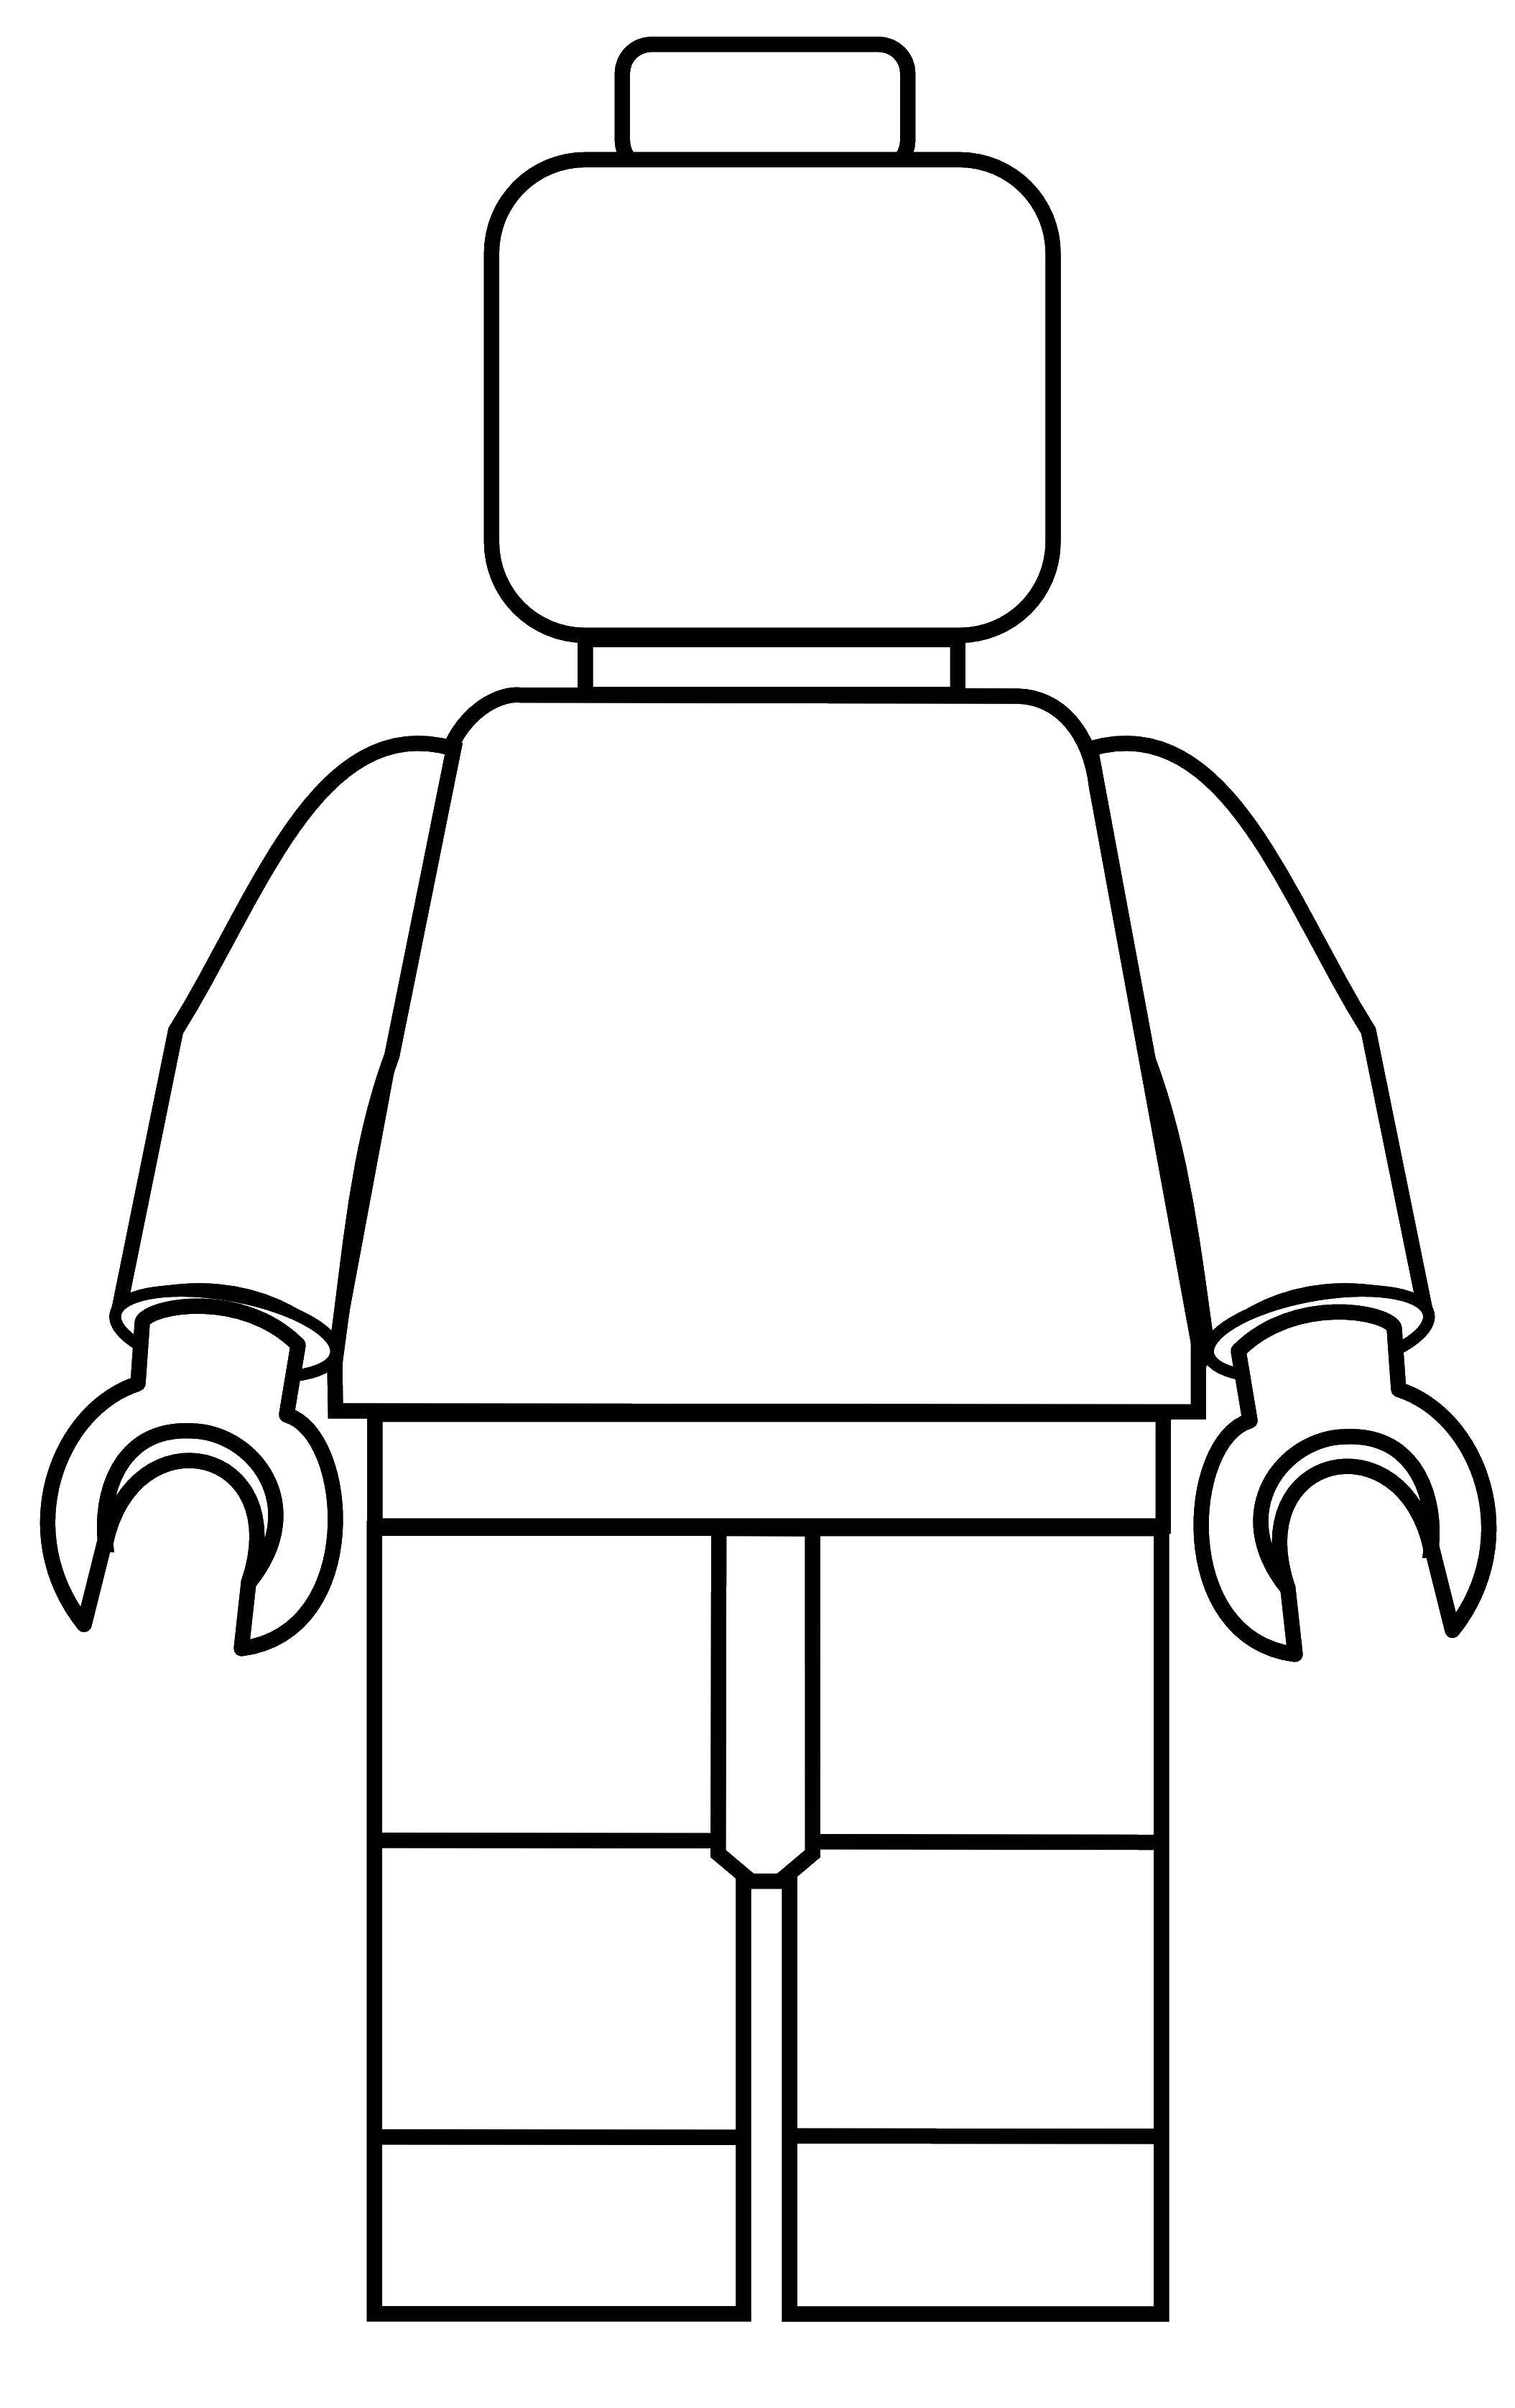 Название: Раскраска Лего. Категория: Лего. Теги: игры, конструктор, Лего.